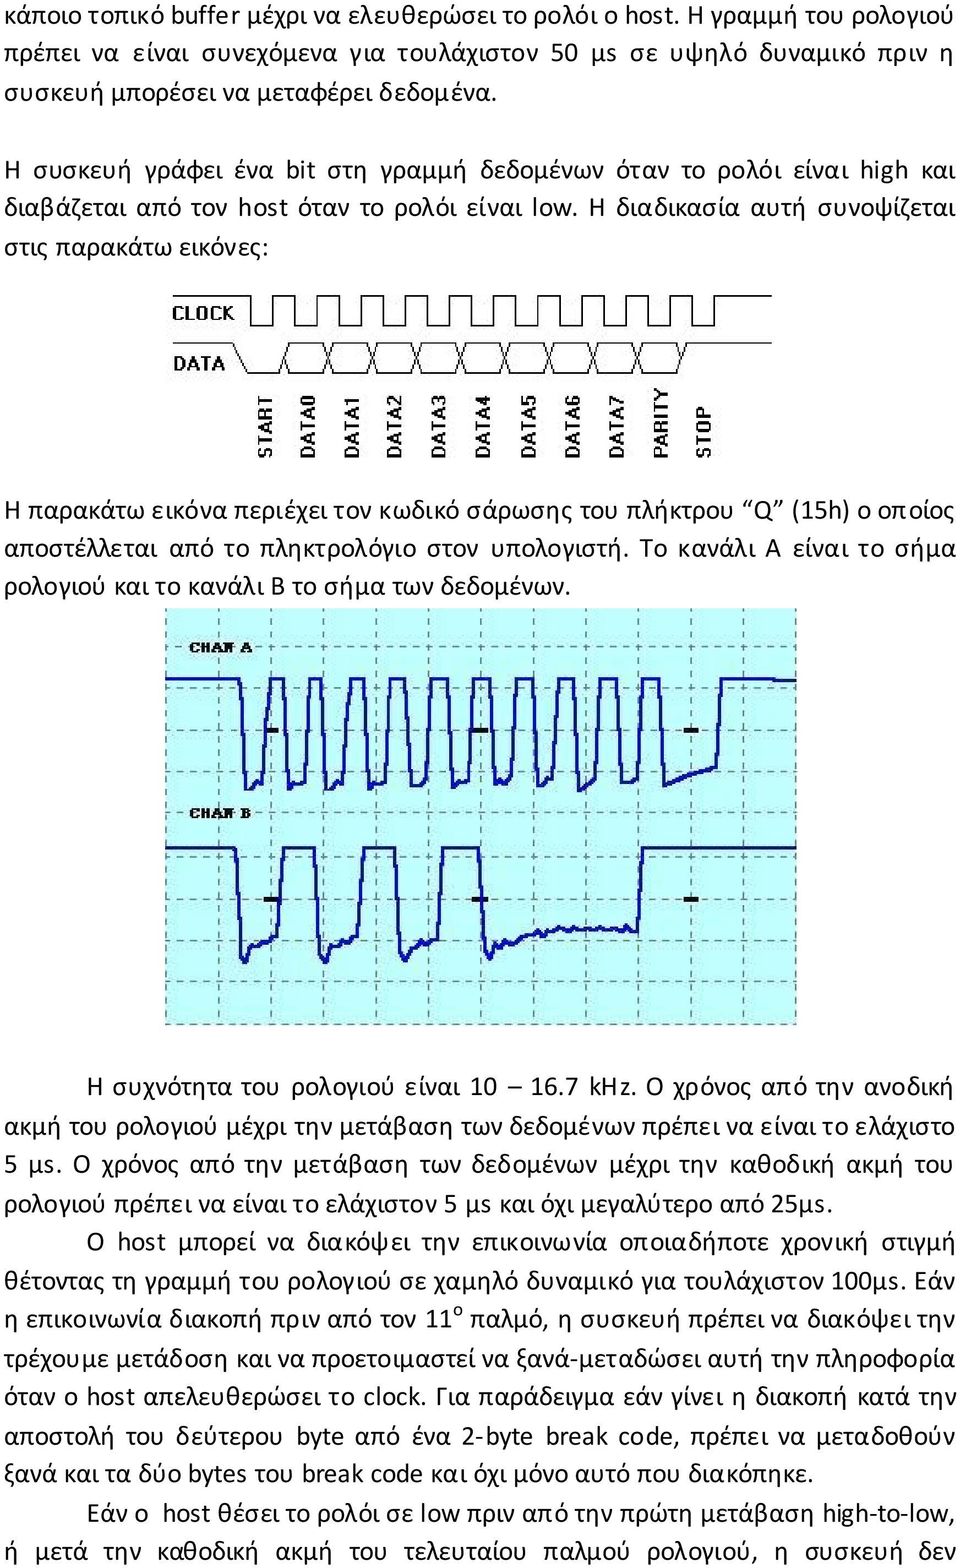 Η διαδικασία αυτή συνοψίζεται στις παρακάτω εικόνες: Η παρακάτω εικόνα περιέχει τον κωδικό σάρωσης του πλήκτρου Q (15h) ο οποίος αποστέλλεται από το πληκτρολόγιο στον υπολογιστή.